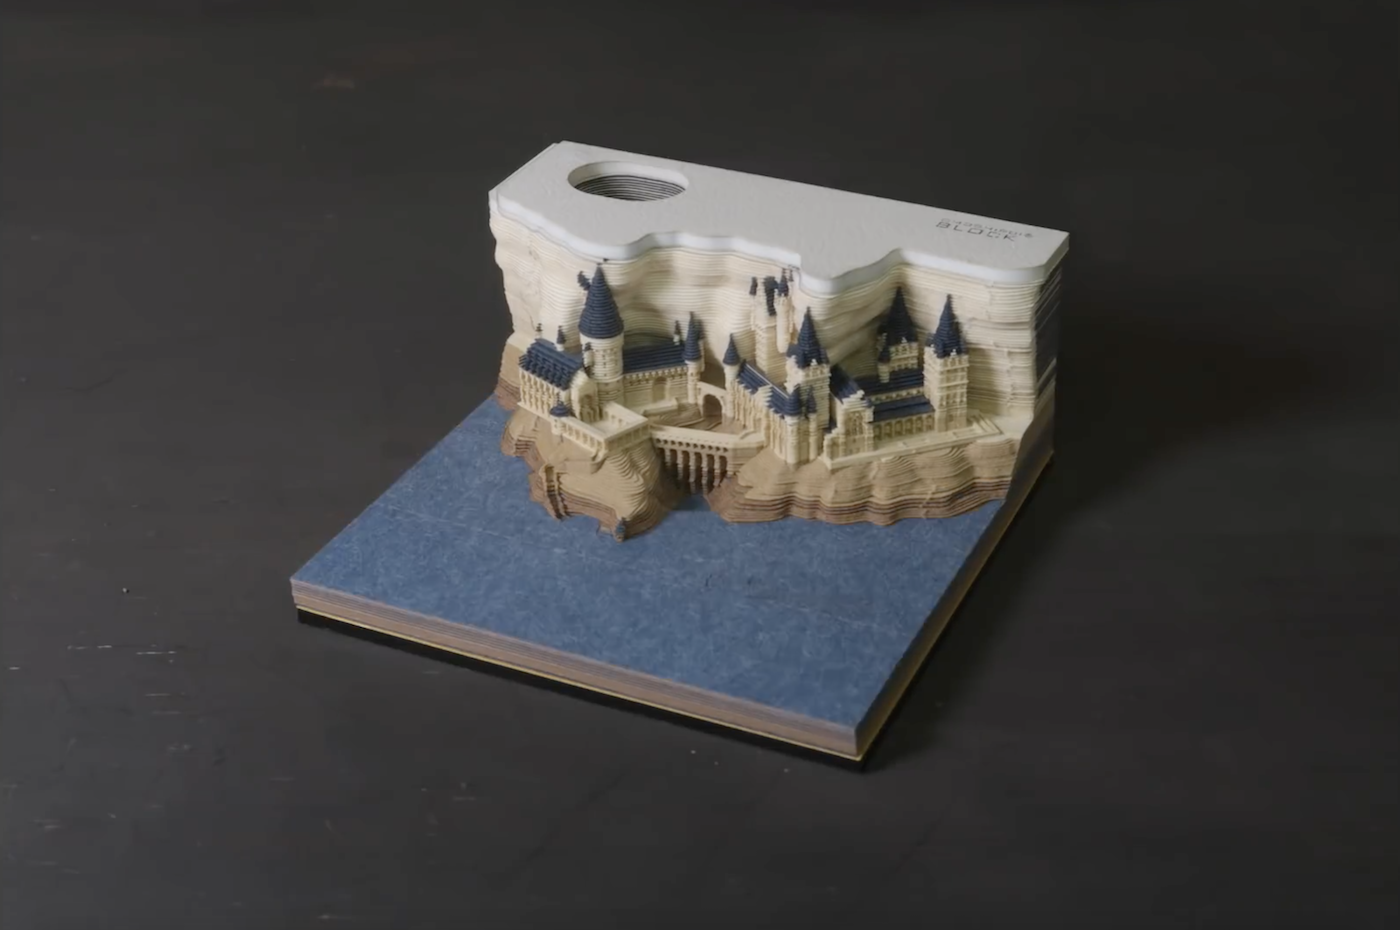 Ce bloc-notes Harry Potter fait apparaître le château de Poudlard une fois consommé